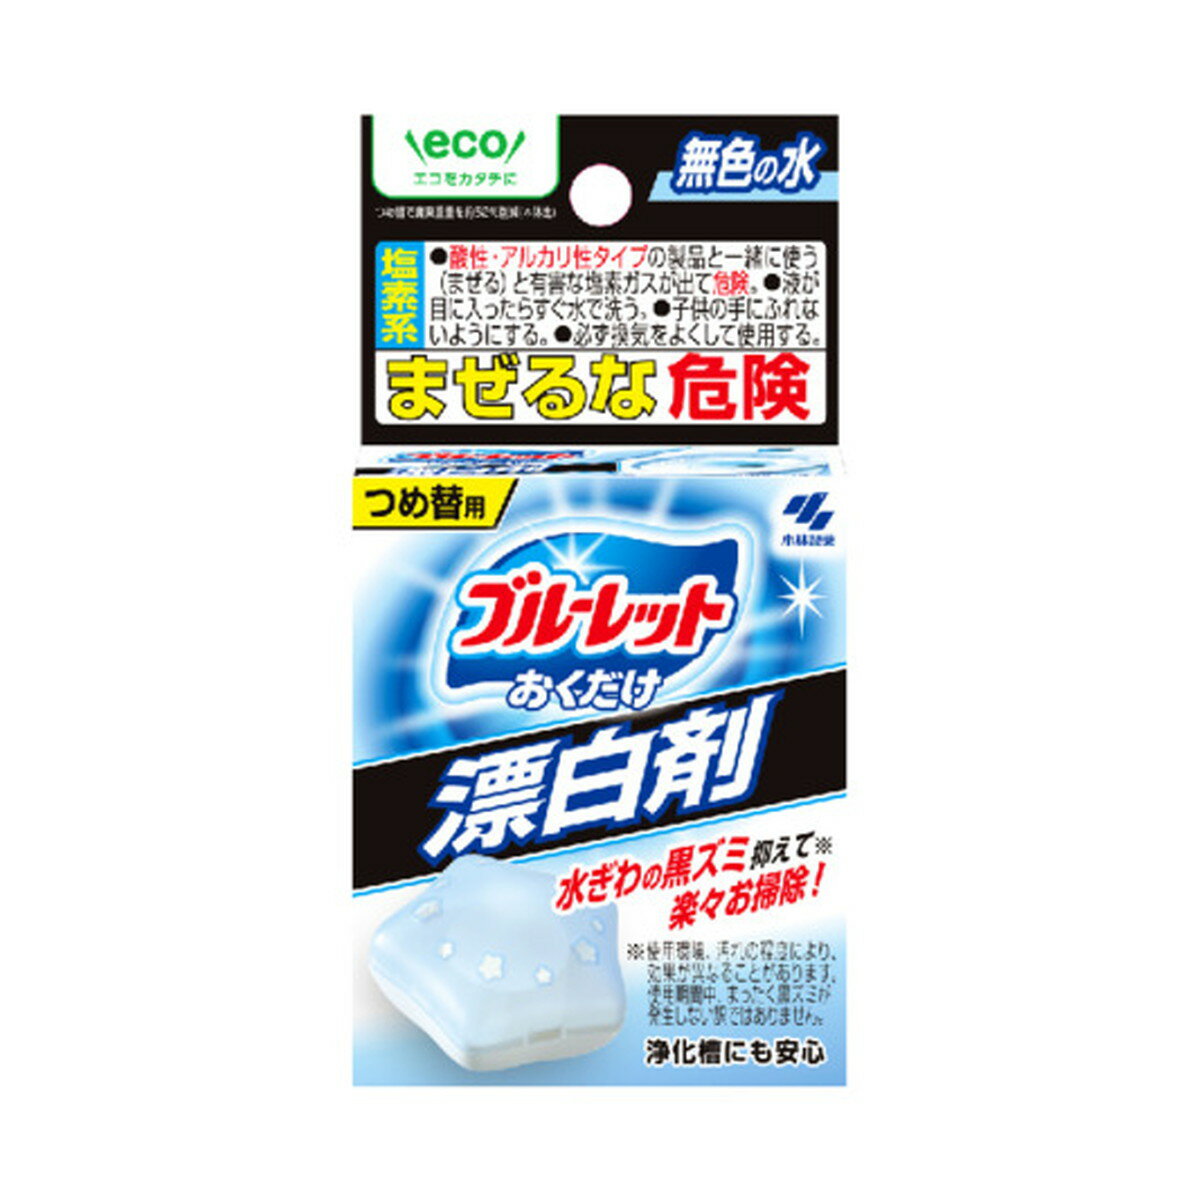 【送料込】 小林製薬 ブルーレット おくだけ 漂白剤 詰替え用 30ML トイレ用洗剤 1個